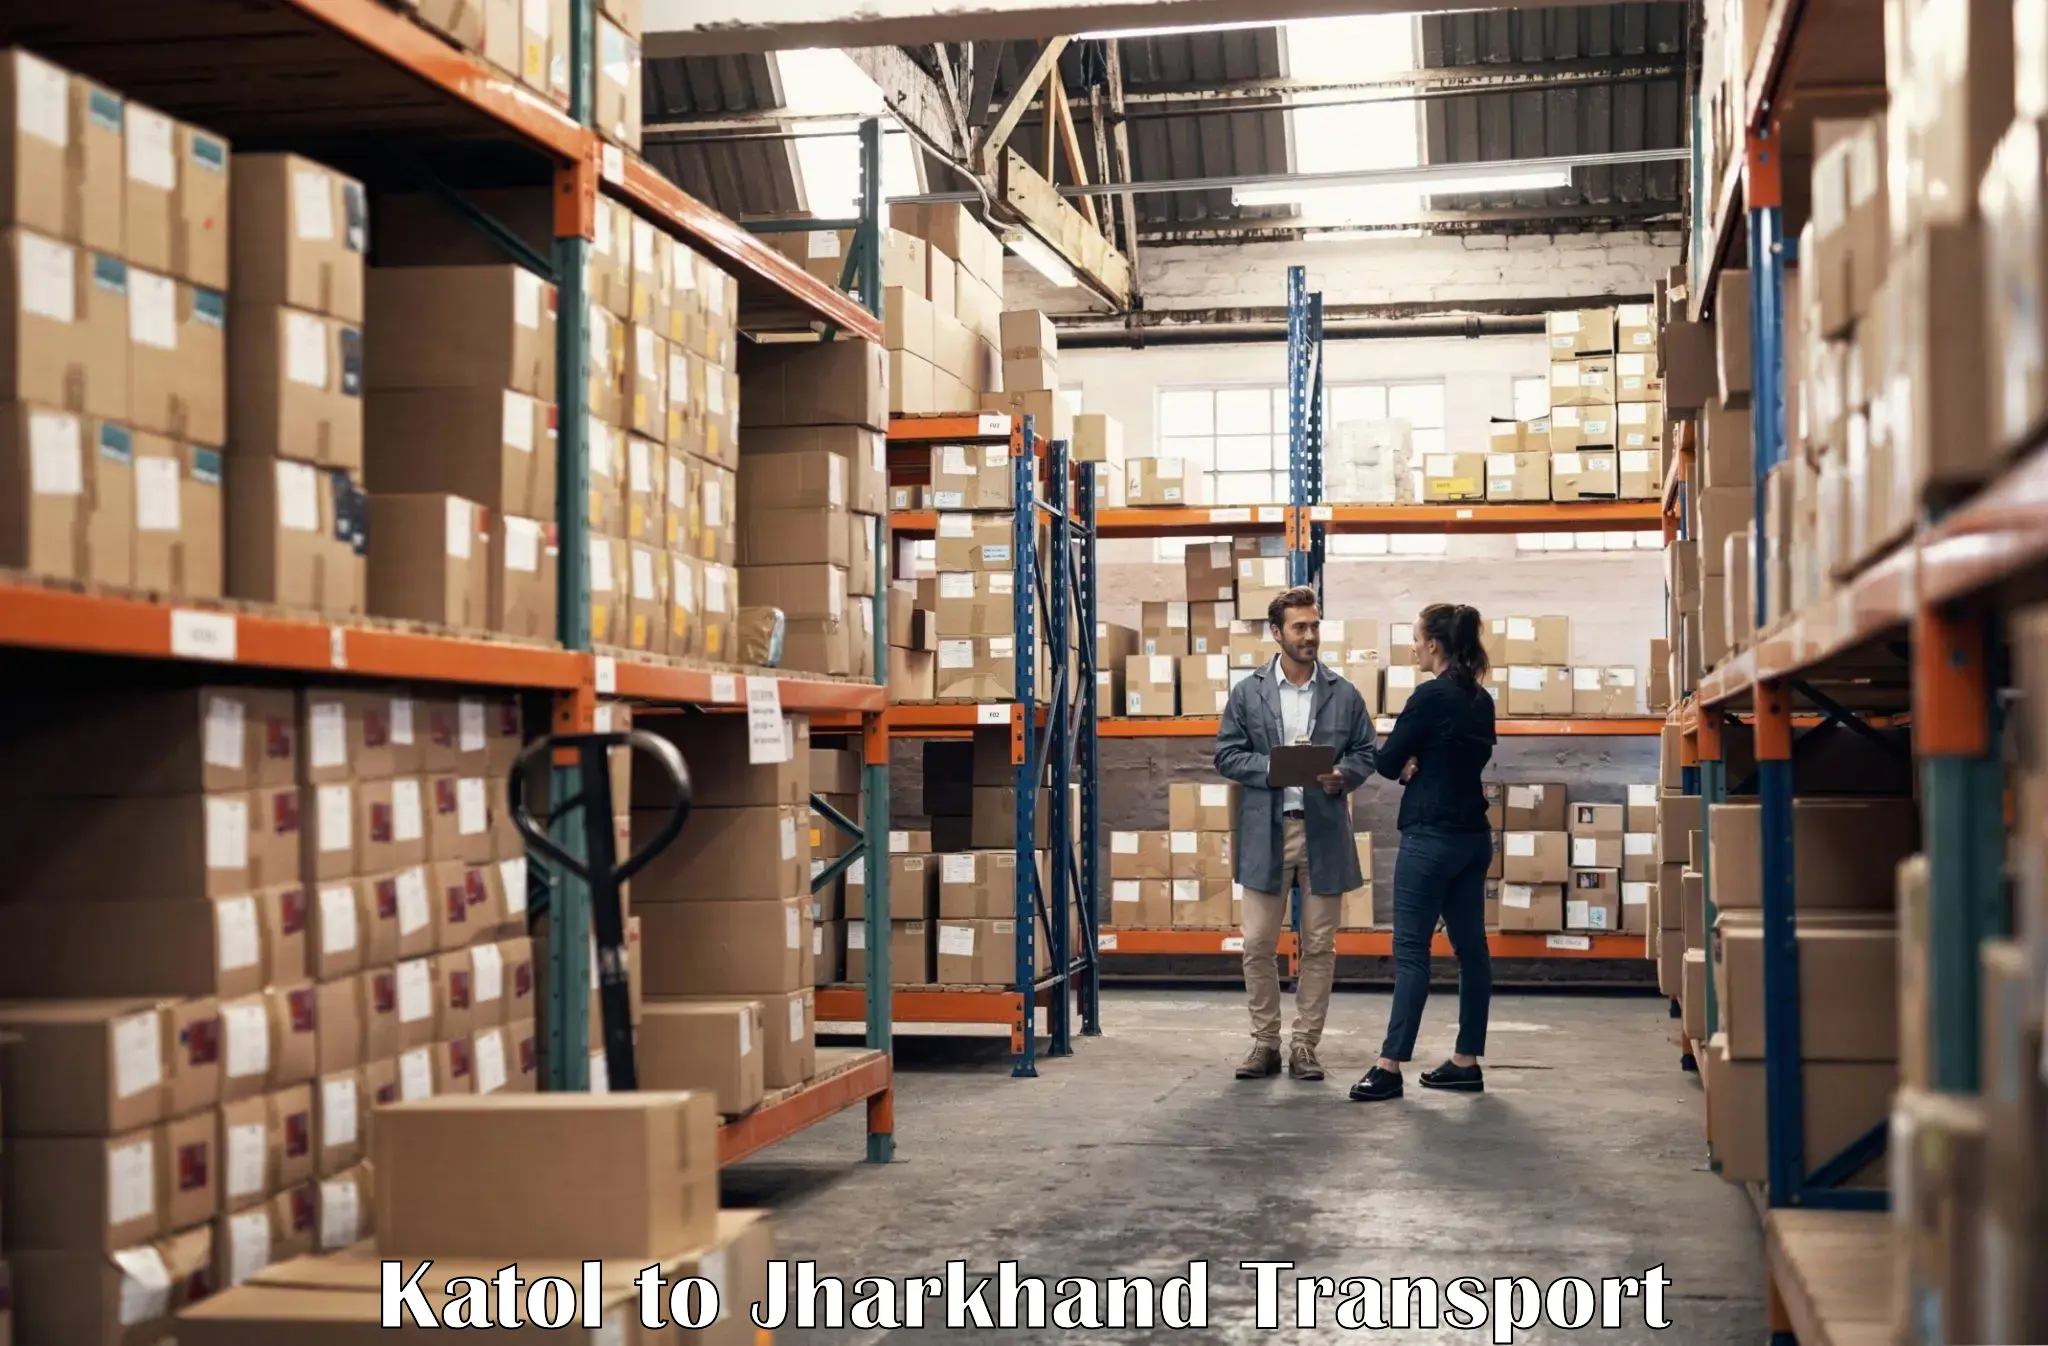 Truck transport companies in India Katol to Chakradharpur